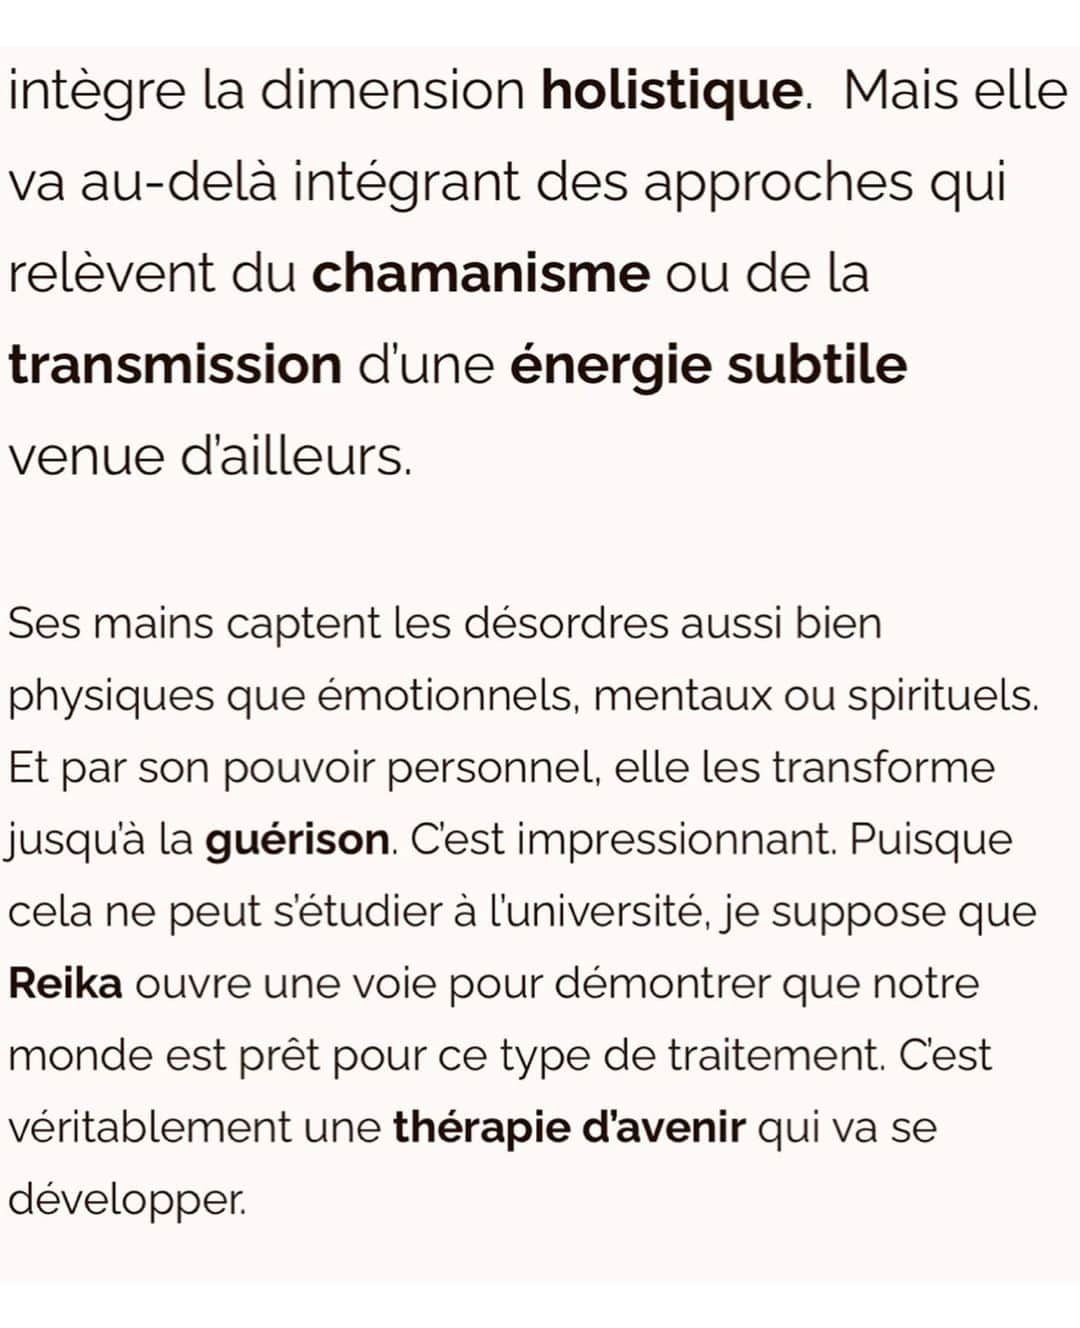 朝井麗華さんのインスタグラム写真 - (朝井麗華Instagram)「フランスの有名なスパ・ウェルネス雑誌に掲載されました！ 『次元を超えた未来の治療法』と言って頂けてる🥹✨ Google翻訳まんまで意味不明な部分がありますがご一読いただけたら嬉しいです［特に後半を！］  https://wellnessbygalyaortega.com/2023/09/26/reika-asai-un-guide-vers-la-guerison-du-corps-et-de-lame/  《朝井麗華、身体と魂を癒すガイドブック》  【賜物の啓示】  当初、レイカがこの高度な治療を受ける素地は何もなかったようだ。しかし20年ほど前、彼女は大きな試練を経験した。その結果、彼女の人生はセラピーを中心に回るようになった。彼女はオステオパシー、マッサージ、鍼のような手技治療をマスターし、現在はそれを教えている。さまざまな代替療法をしっかり学んだ。そして次第に、癒しの才能が姿を現した。彼女は治療している人の不調を感じ取る。身体からほんの数センチ手を離しただけで、彼女は身体的にも精神的にも、実に正確にスキャンし、診断を下すことができる。朝井麗華は日本ではとても有名だ。彼女はコンサルを行い、5年間予約はいっぱいだ。彼女は本物のスターであり、11冊の本を書き、160以上の雑誌に登場し、映画を撮り、いくつかのテレビ番組に出演している。彼女はしばしば、自分のやっていることを伝えたり教えたりしてほしいと頼まれる。彼女は自分が知っていて実践しているトリートメントやマッサージを教えるが、自分が持っている才能を伝授したり、それを個人的なイニシエーションに結びつけることはできない。彼女はあるとき、それを探し求めなくても、それを授かり、苦しんでいる人々にそれを実践している。それはすべて、  【他者への献身】  17年前に自分の才能を明らかにして以来、レイカは日本で彼女の周囲のケアに専念しました。ここ何年もこれです。彼女にとって重要なことは、このエネルギーを分配し、他の人に良いことをすることです。それから最近、彼女はヨーロッパに来たがりました。彼女はフランス（パリ、ニース、カンヌ、モナコ）からスタートしました。彼女はケアを提供し、コミュニケーションを取り、来年に向けてより長く滞在して治癒を求める患者にケアを提供する「ツアー」の準備をしている。それは今年訪問される特定の宮殿に安定的に配置される予定であり、その時点で任命の機会があるでしょう。その目的は、このエネルギーを必要とする人々に分配することです。  【他の場所から来た未来の治療法】  このようなヒーリングについて、私たちは自問自答することができる。どんなに高度であっても、学校で学ぶ技術ではないからだ。レイカの卓越した施術を受けた以上、一人の人間にすべてがかかっているのだとしたら、彼女が発信したもので私たちは何ができるのだろうか？よく考えてみると、私たちは癒しの世界は変わりつつあり、開かれつつあるという結論に至らざるを得ません。 私たちは、心と身体の全体に働きかけるホリスティックなトリートメントを体験しました。これらは本質的にはアジアの伝統医学に由来ています。そしてそれは教えることができ、実践は非常に特別で構造化されていますが、セラピスト側の正確なポジショニングが必要です。レイカが実践していることは、全体的な次元を統合します。しかし、彼女はそれを超えて、シャーマニズムや他の場所からの微細なエネルギーの伝達に関係するアプローチを取り入れている。  彼女の手は肉体的、感情的、精神的、スピリチュアルな障害を捉えます。そして、彼女の個人的な力を通じて、彼らが治癒するまで変容させます。これはすごいことだ。これは大学では学べないので、レイカは私たちの世界がこの種の治療を受け入れる準備ができていることを示す道を開いているのだろう。レイカはまさにこれから発展する未来の治療法です。  #Reikamethod #traumarelease #traumatherapy #bodymindspirit #subconsciousmind #Tuina  #lifetherapy #Lifetherapist #Orientalmedicine #France #Japan #トラウマリリース #トラウマ #トラウマセラピー #ライフセラピー」10月8日 9時35分 - reikaasai